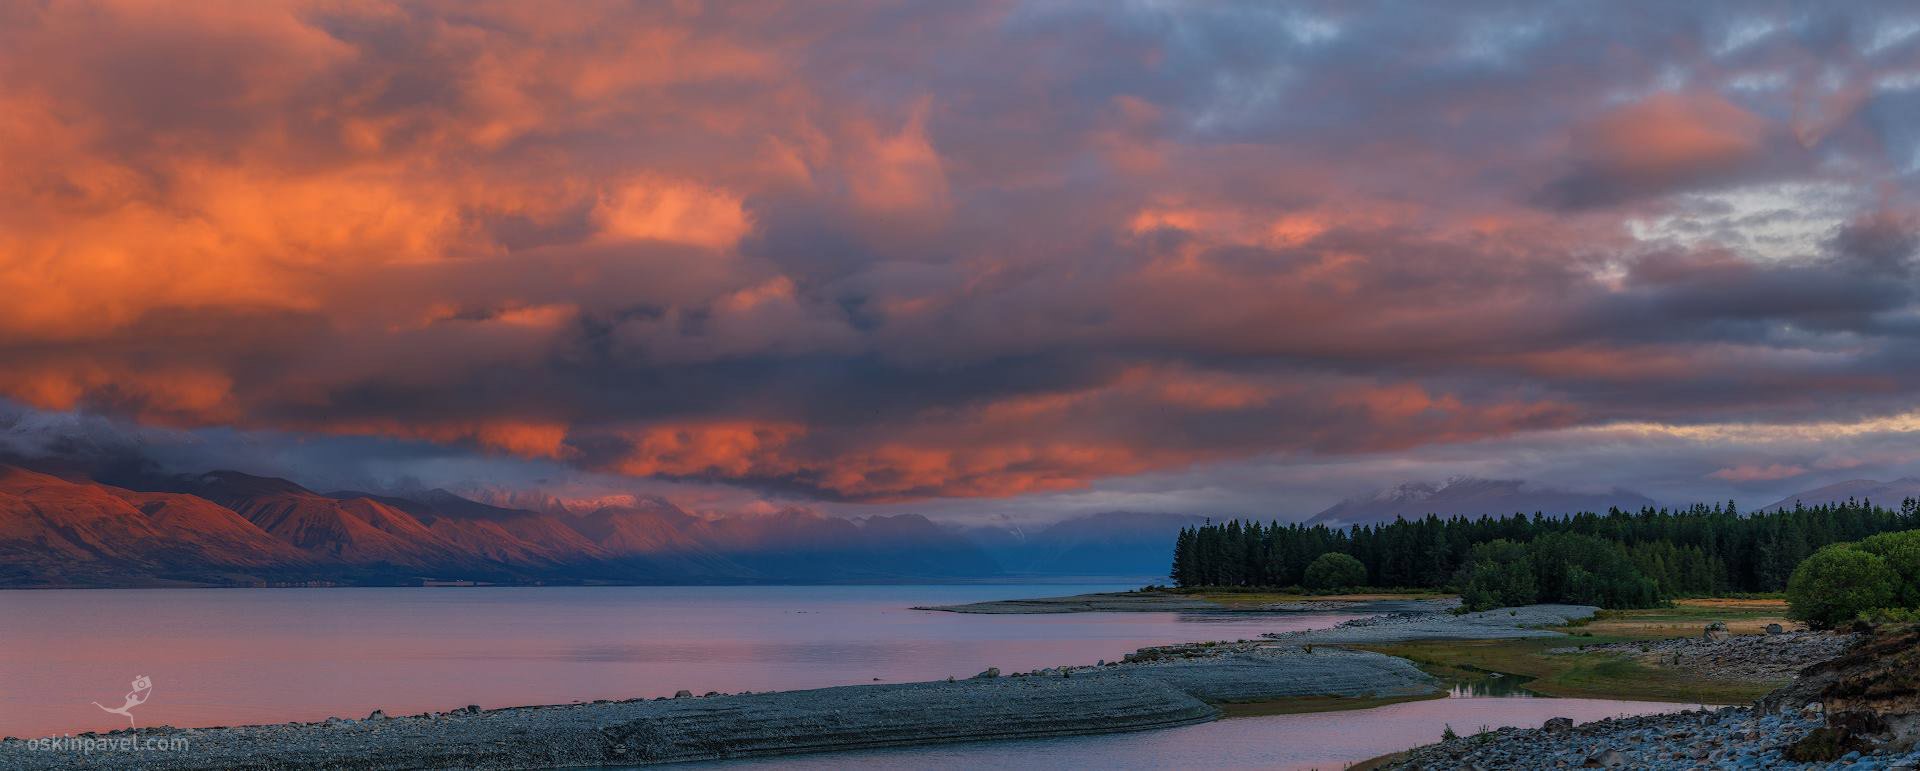 №160. Рассвет на озере Пукаки. Южный остров. Новая Зеландия.